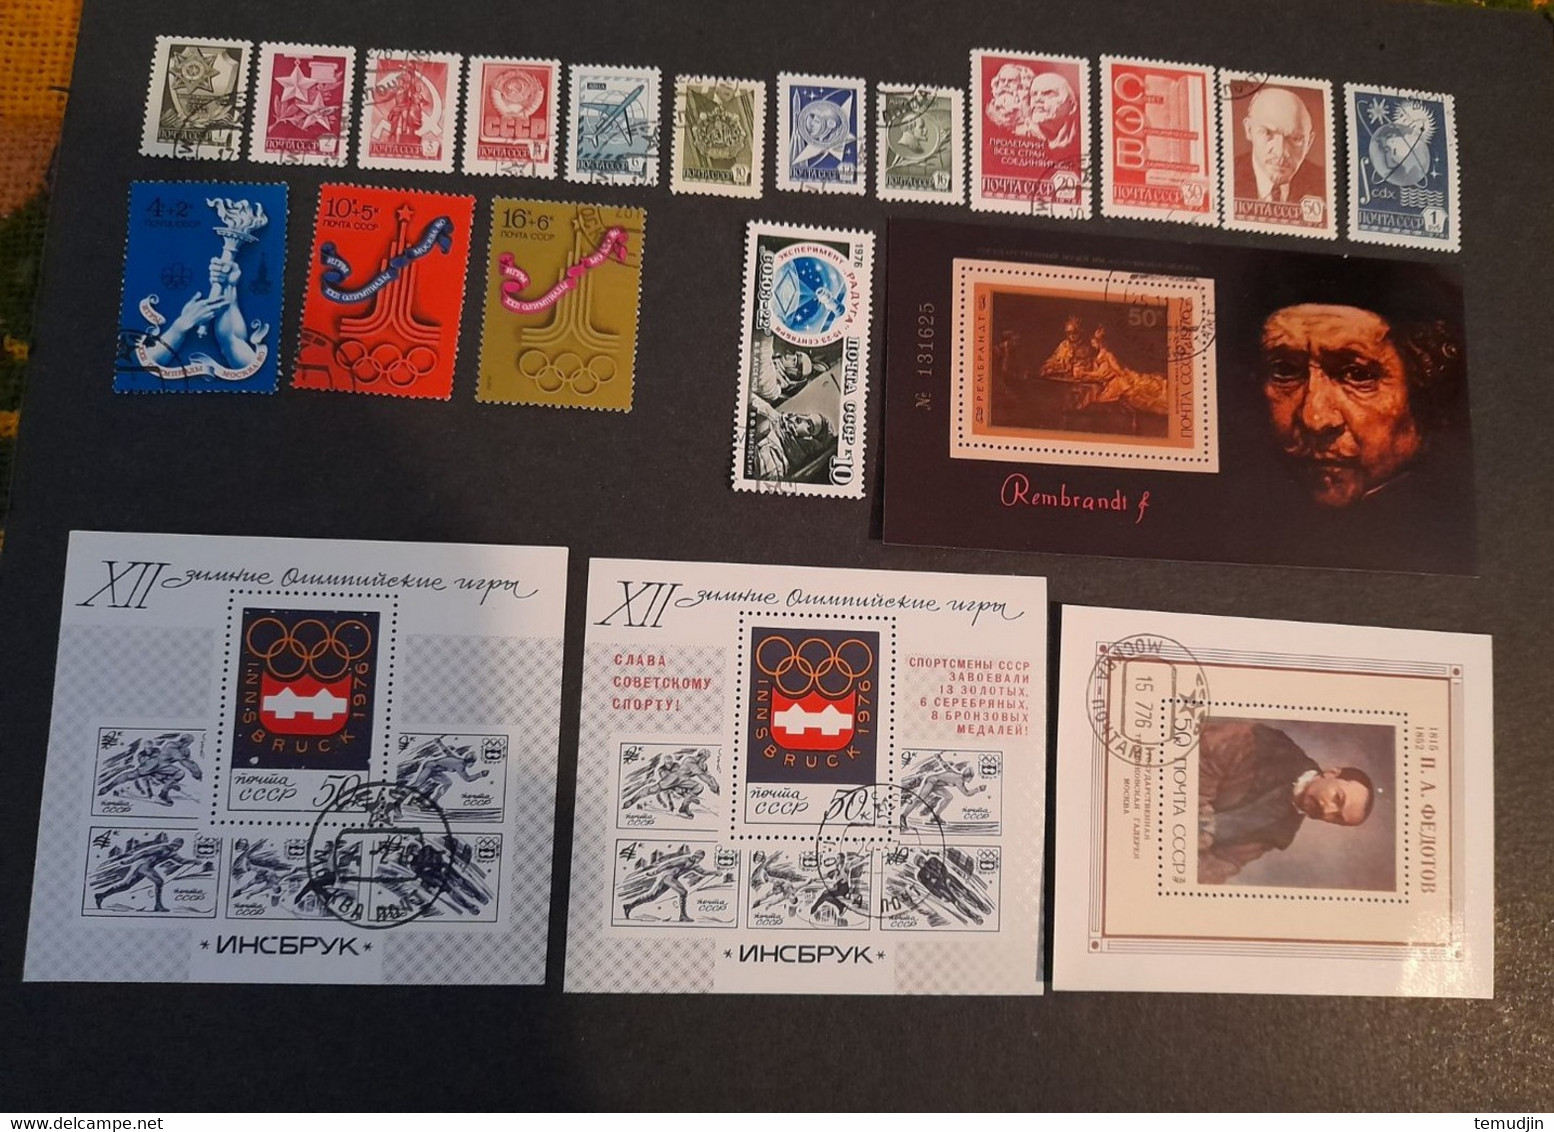 U.R.S.S. 1975 et 1976 : 2 années complètes Yv. timbres oblitérés° avec blocs